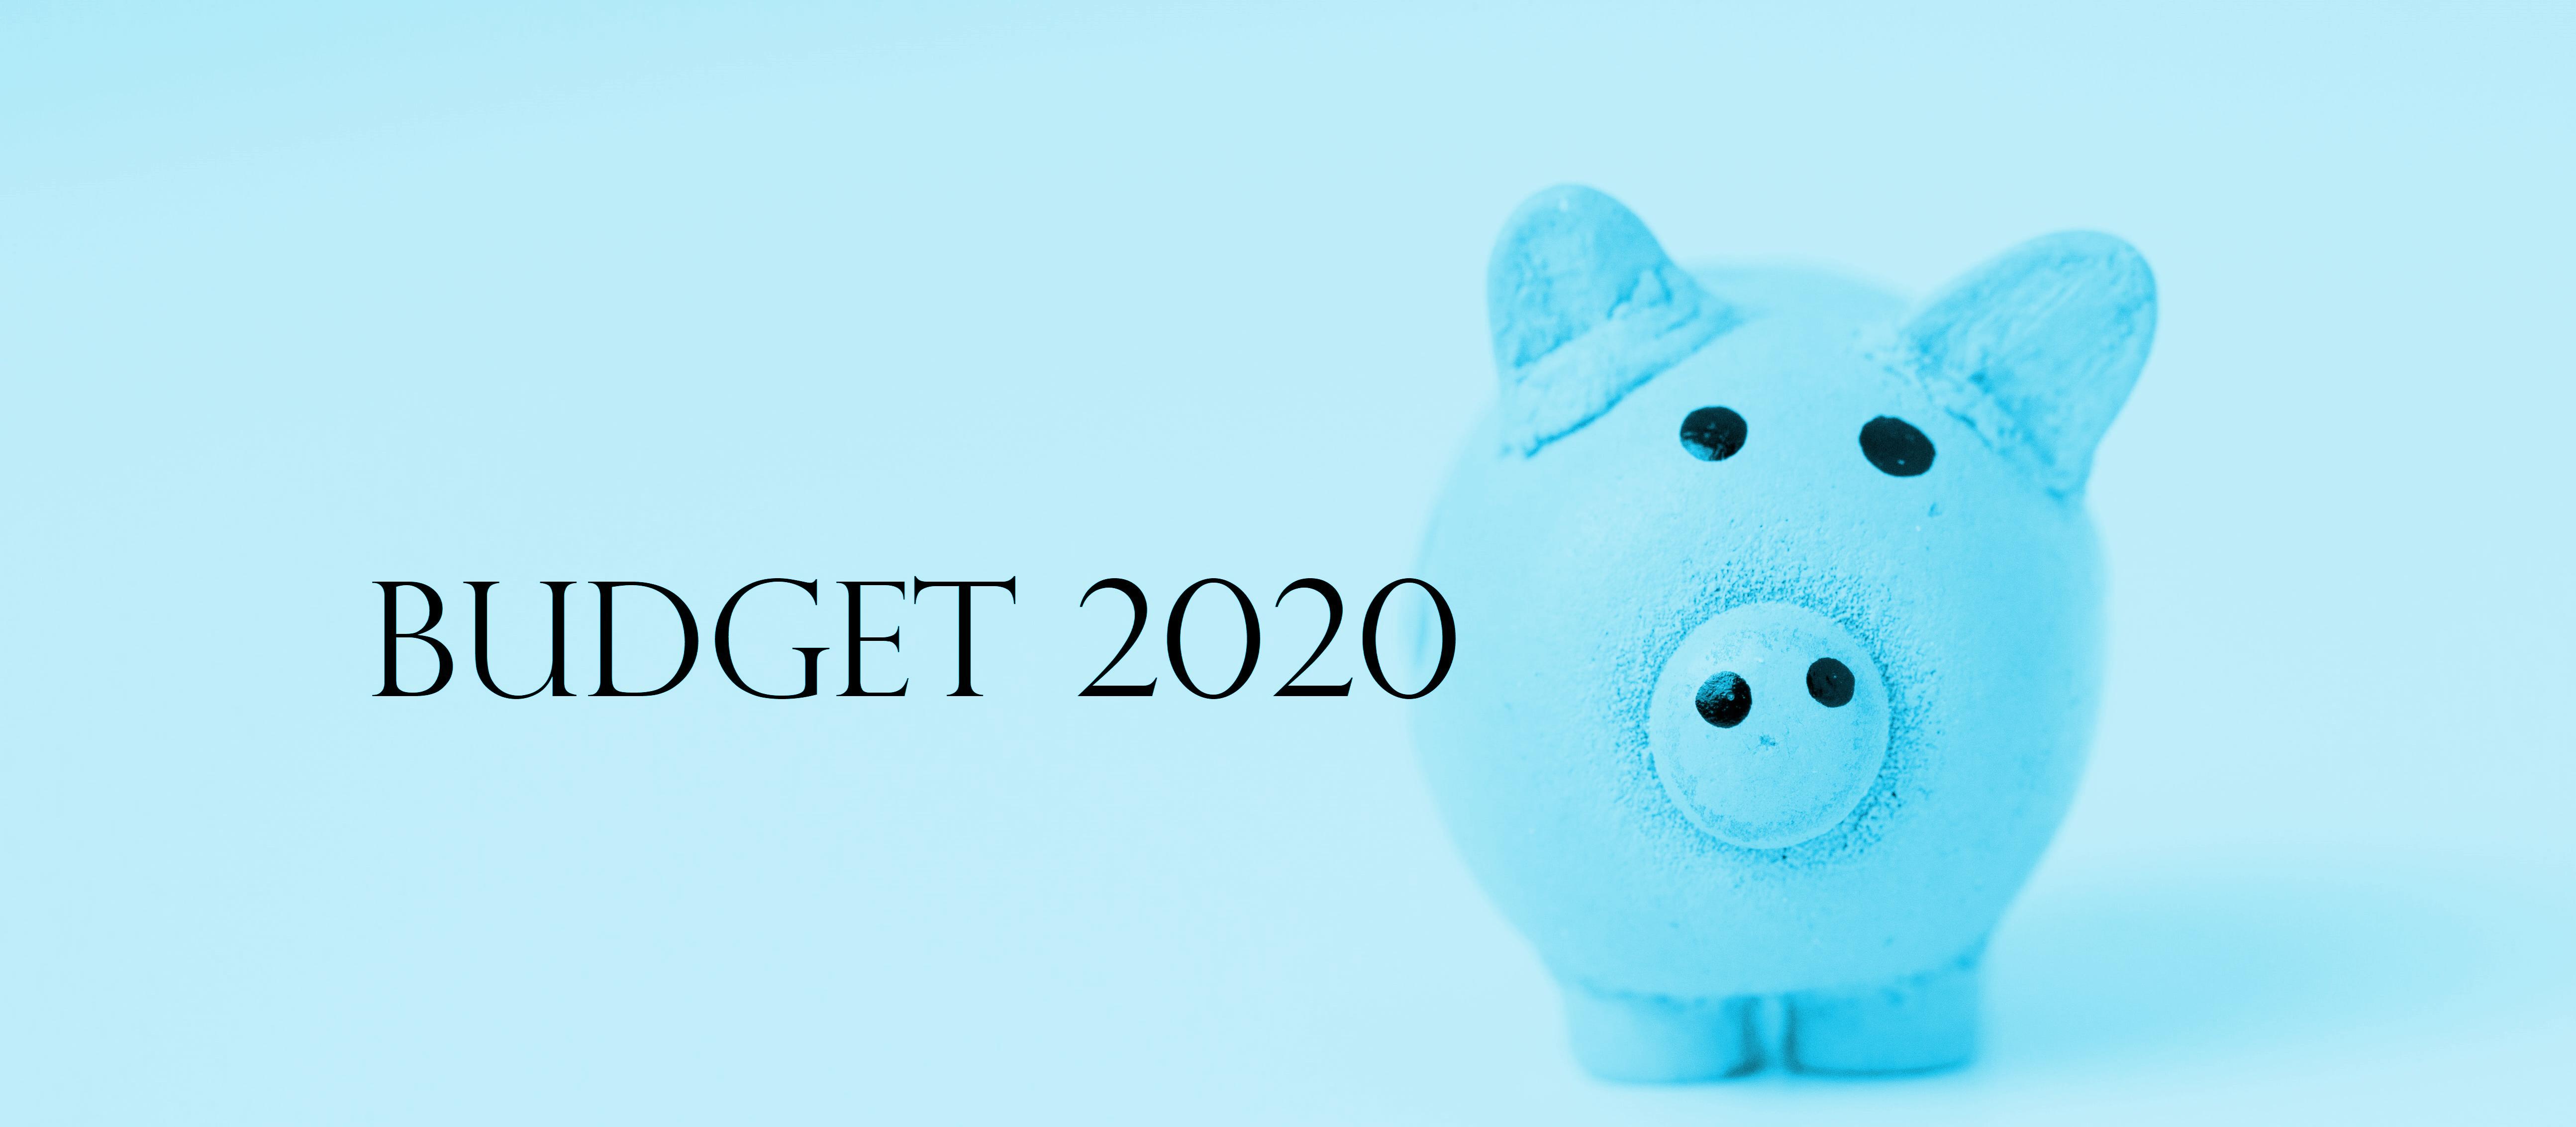 Budget 2020 piggy blue